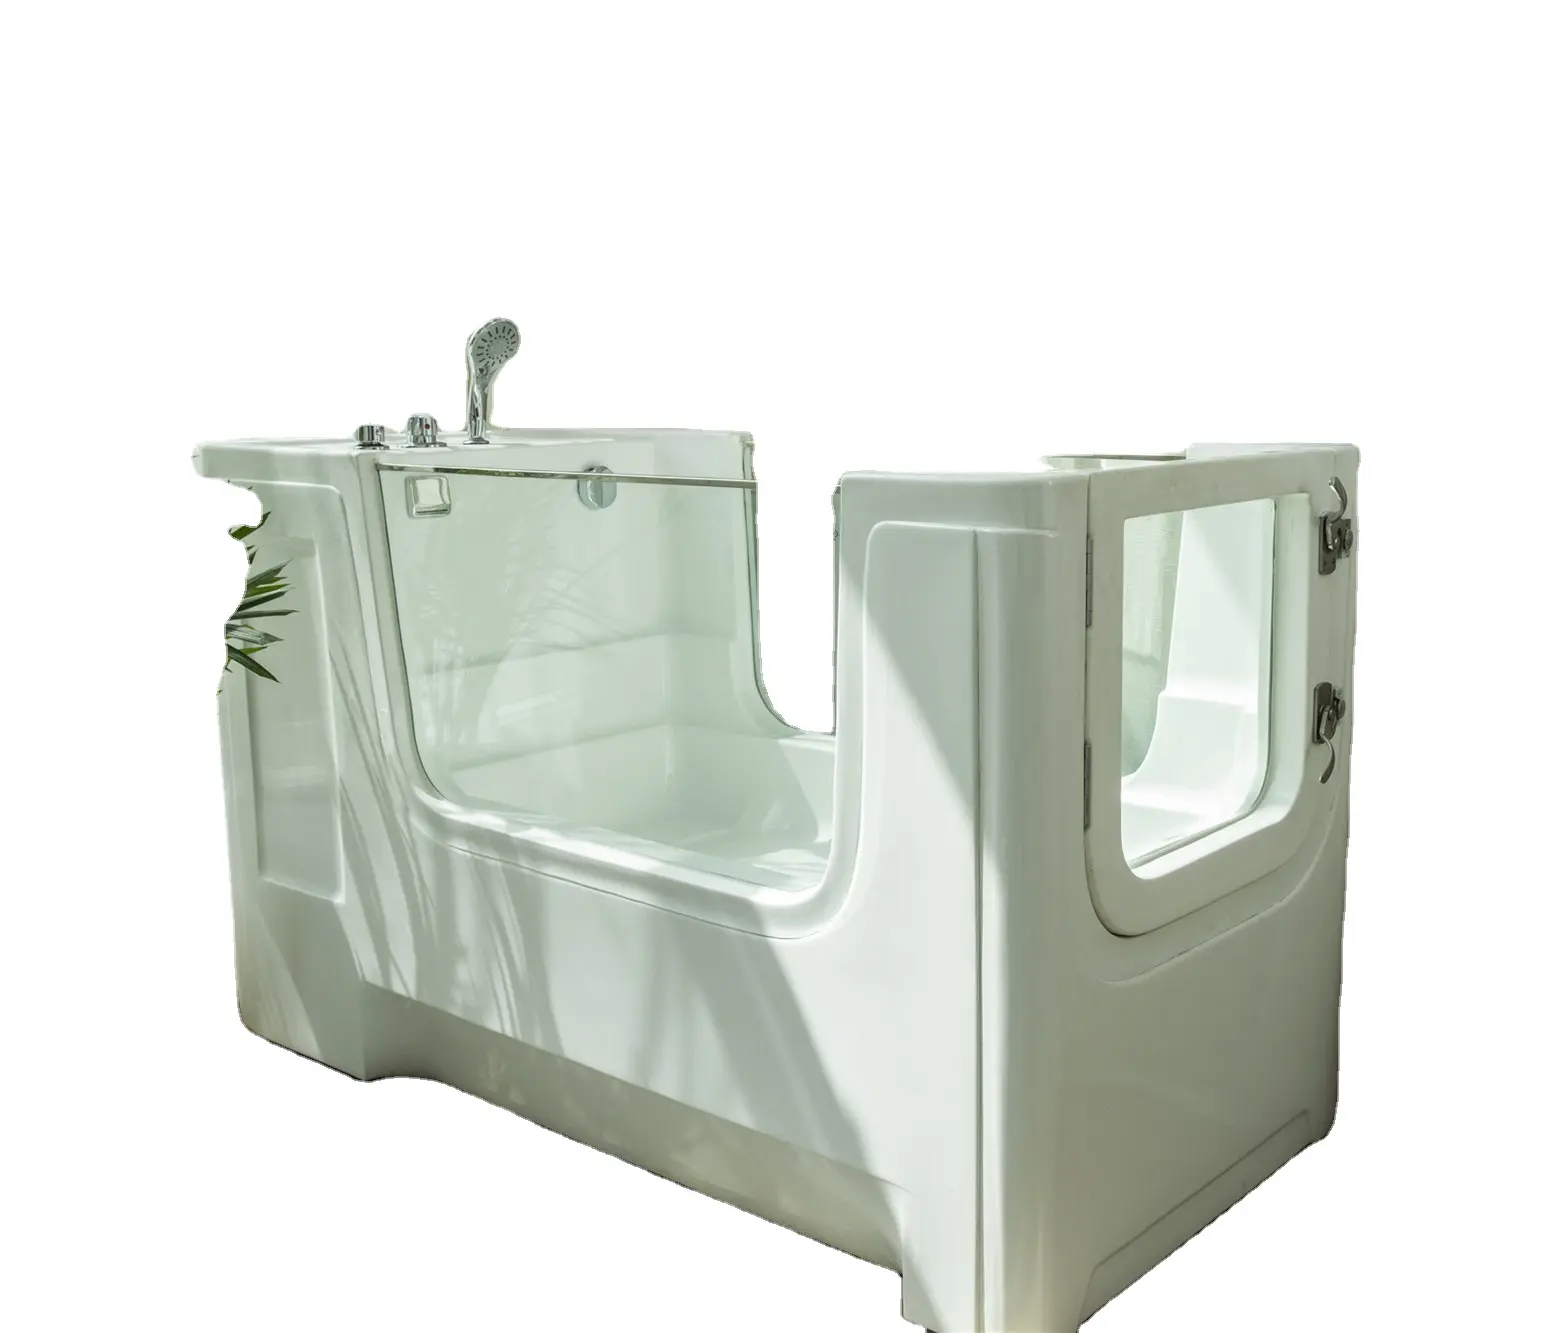 제조 개 손질 욕조/개 스파 목욕/개 세척 역/CE,ISO9001 인증, 욕조 샤워